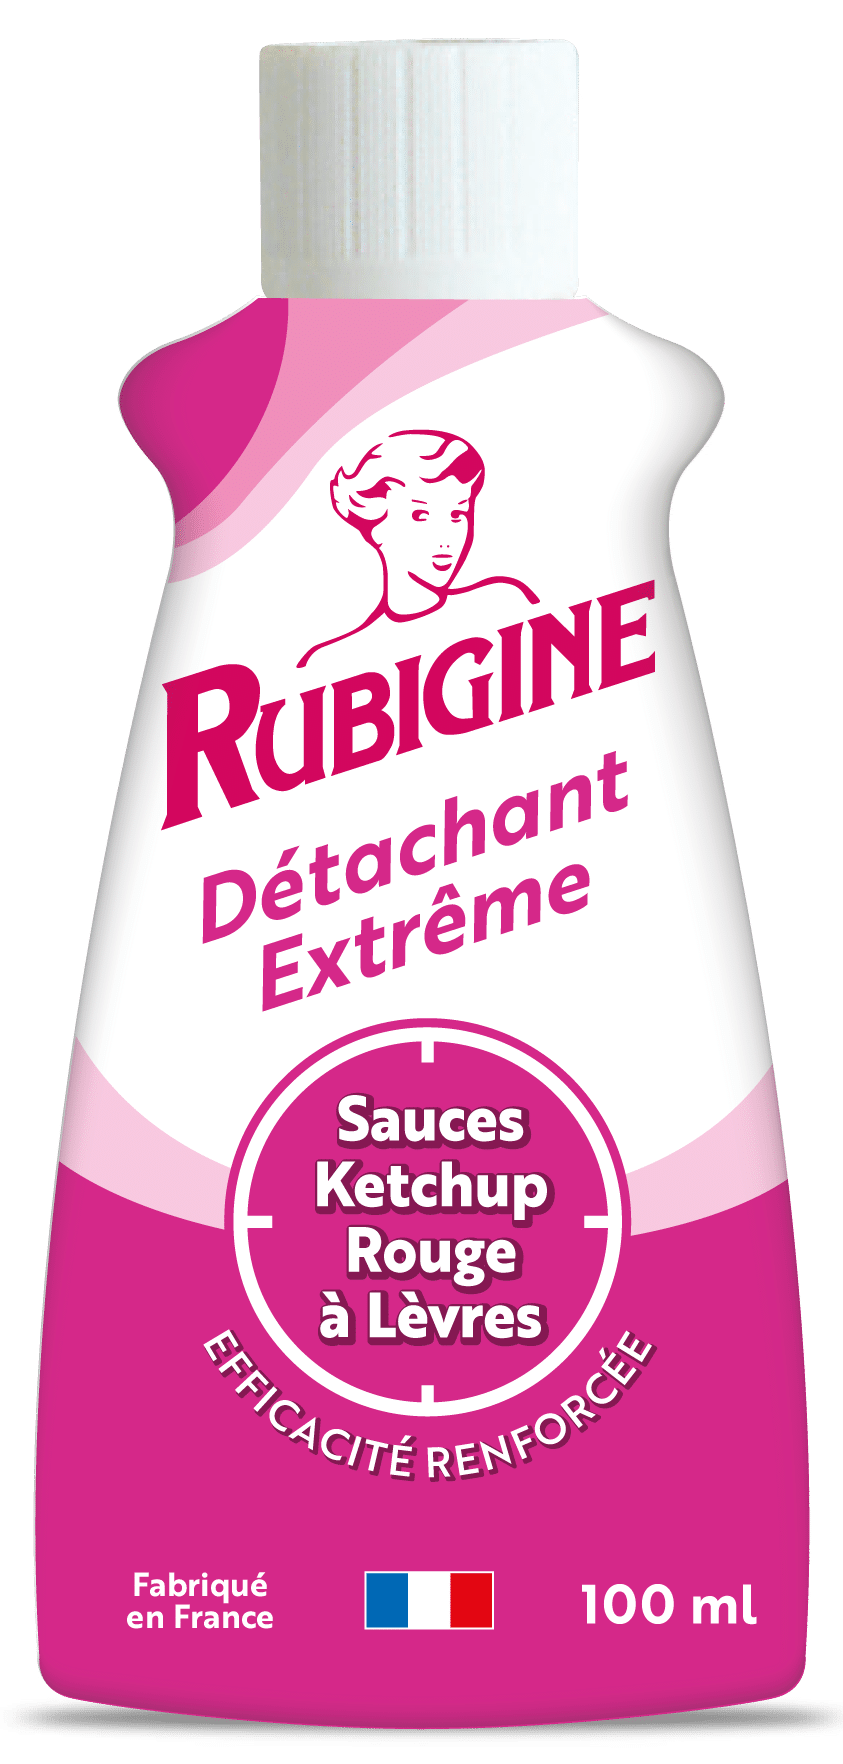 Emballage du produit Rubigine  Sauces, Ketchup, Rouge à Lèvres